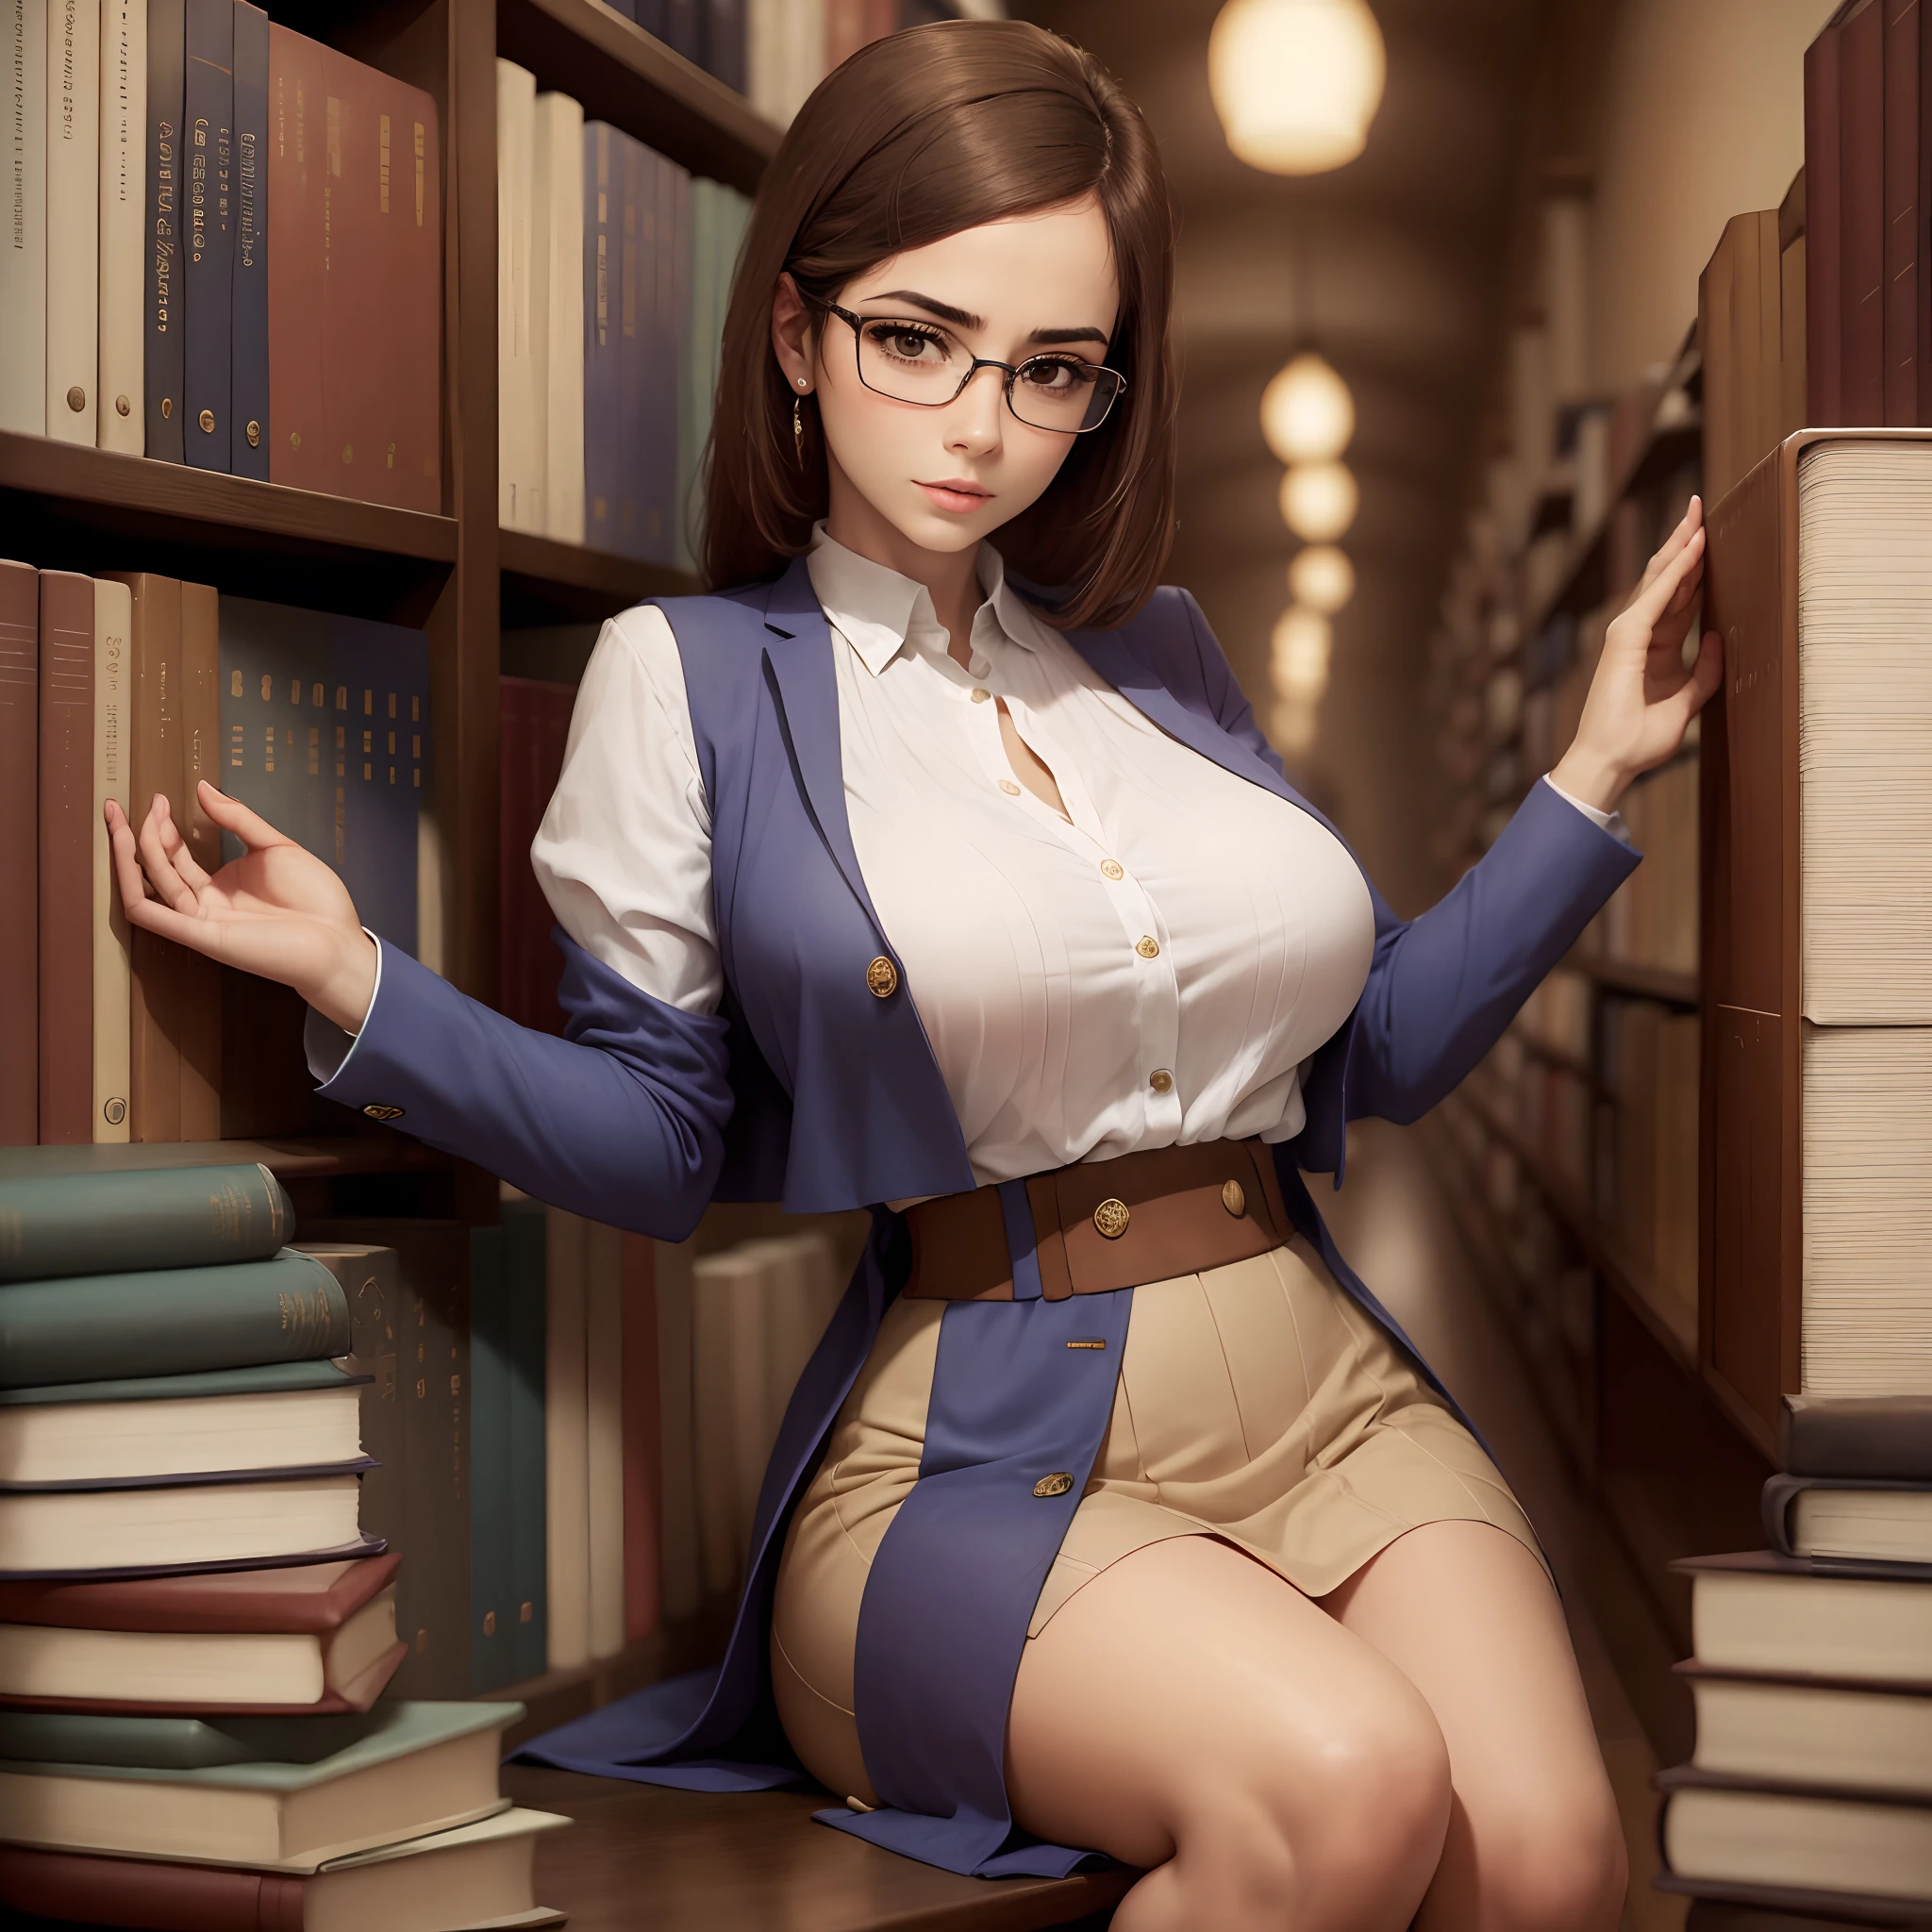 1 mulher, lindo, Sensual, en biblioteca, com óculos, seios grandes, magro, elegante